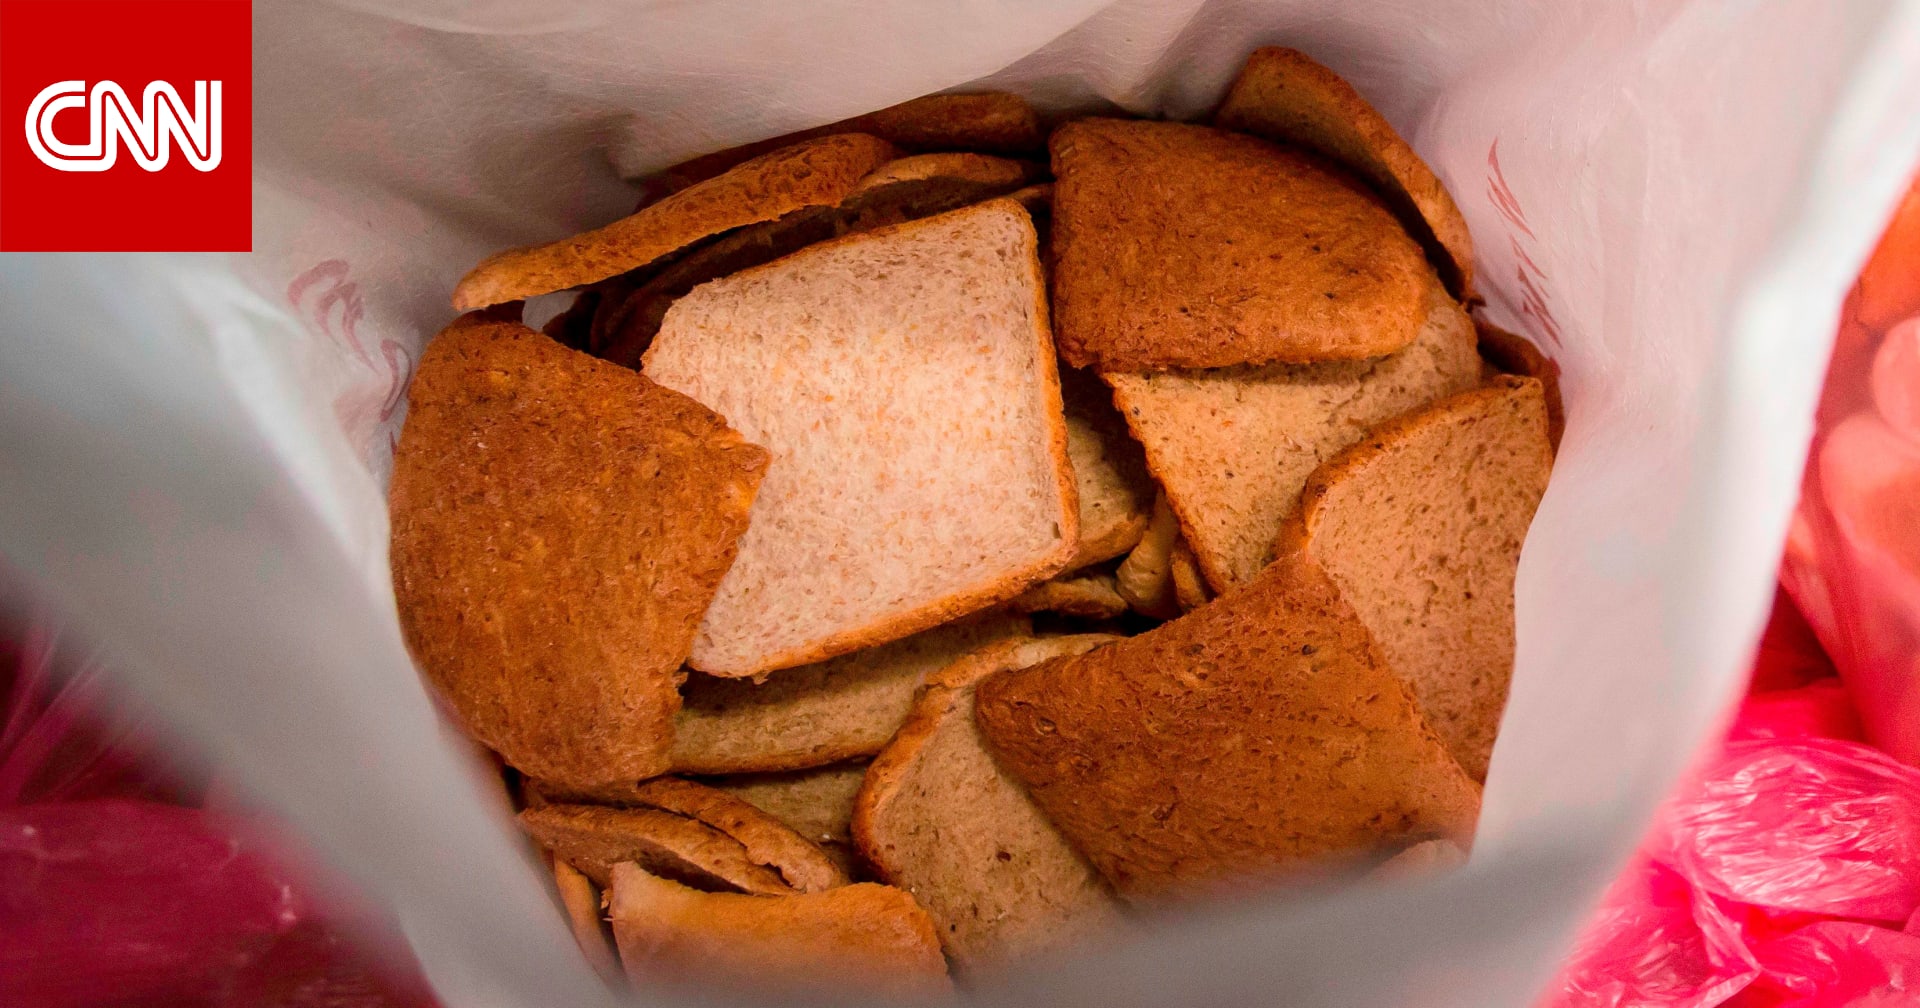 أجزاء من فئران بشرائح خبز "توست" تدفع بالشركة لاستدعاء المنتج 